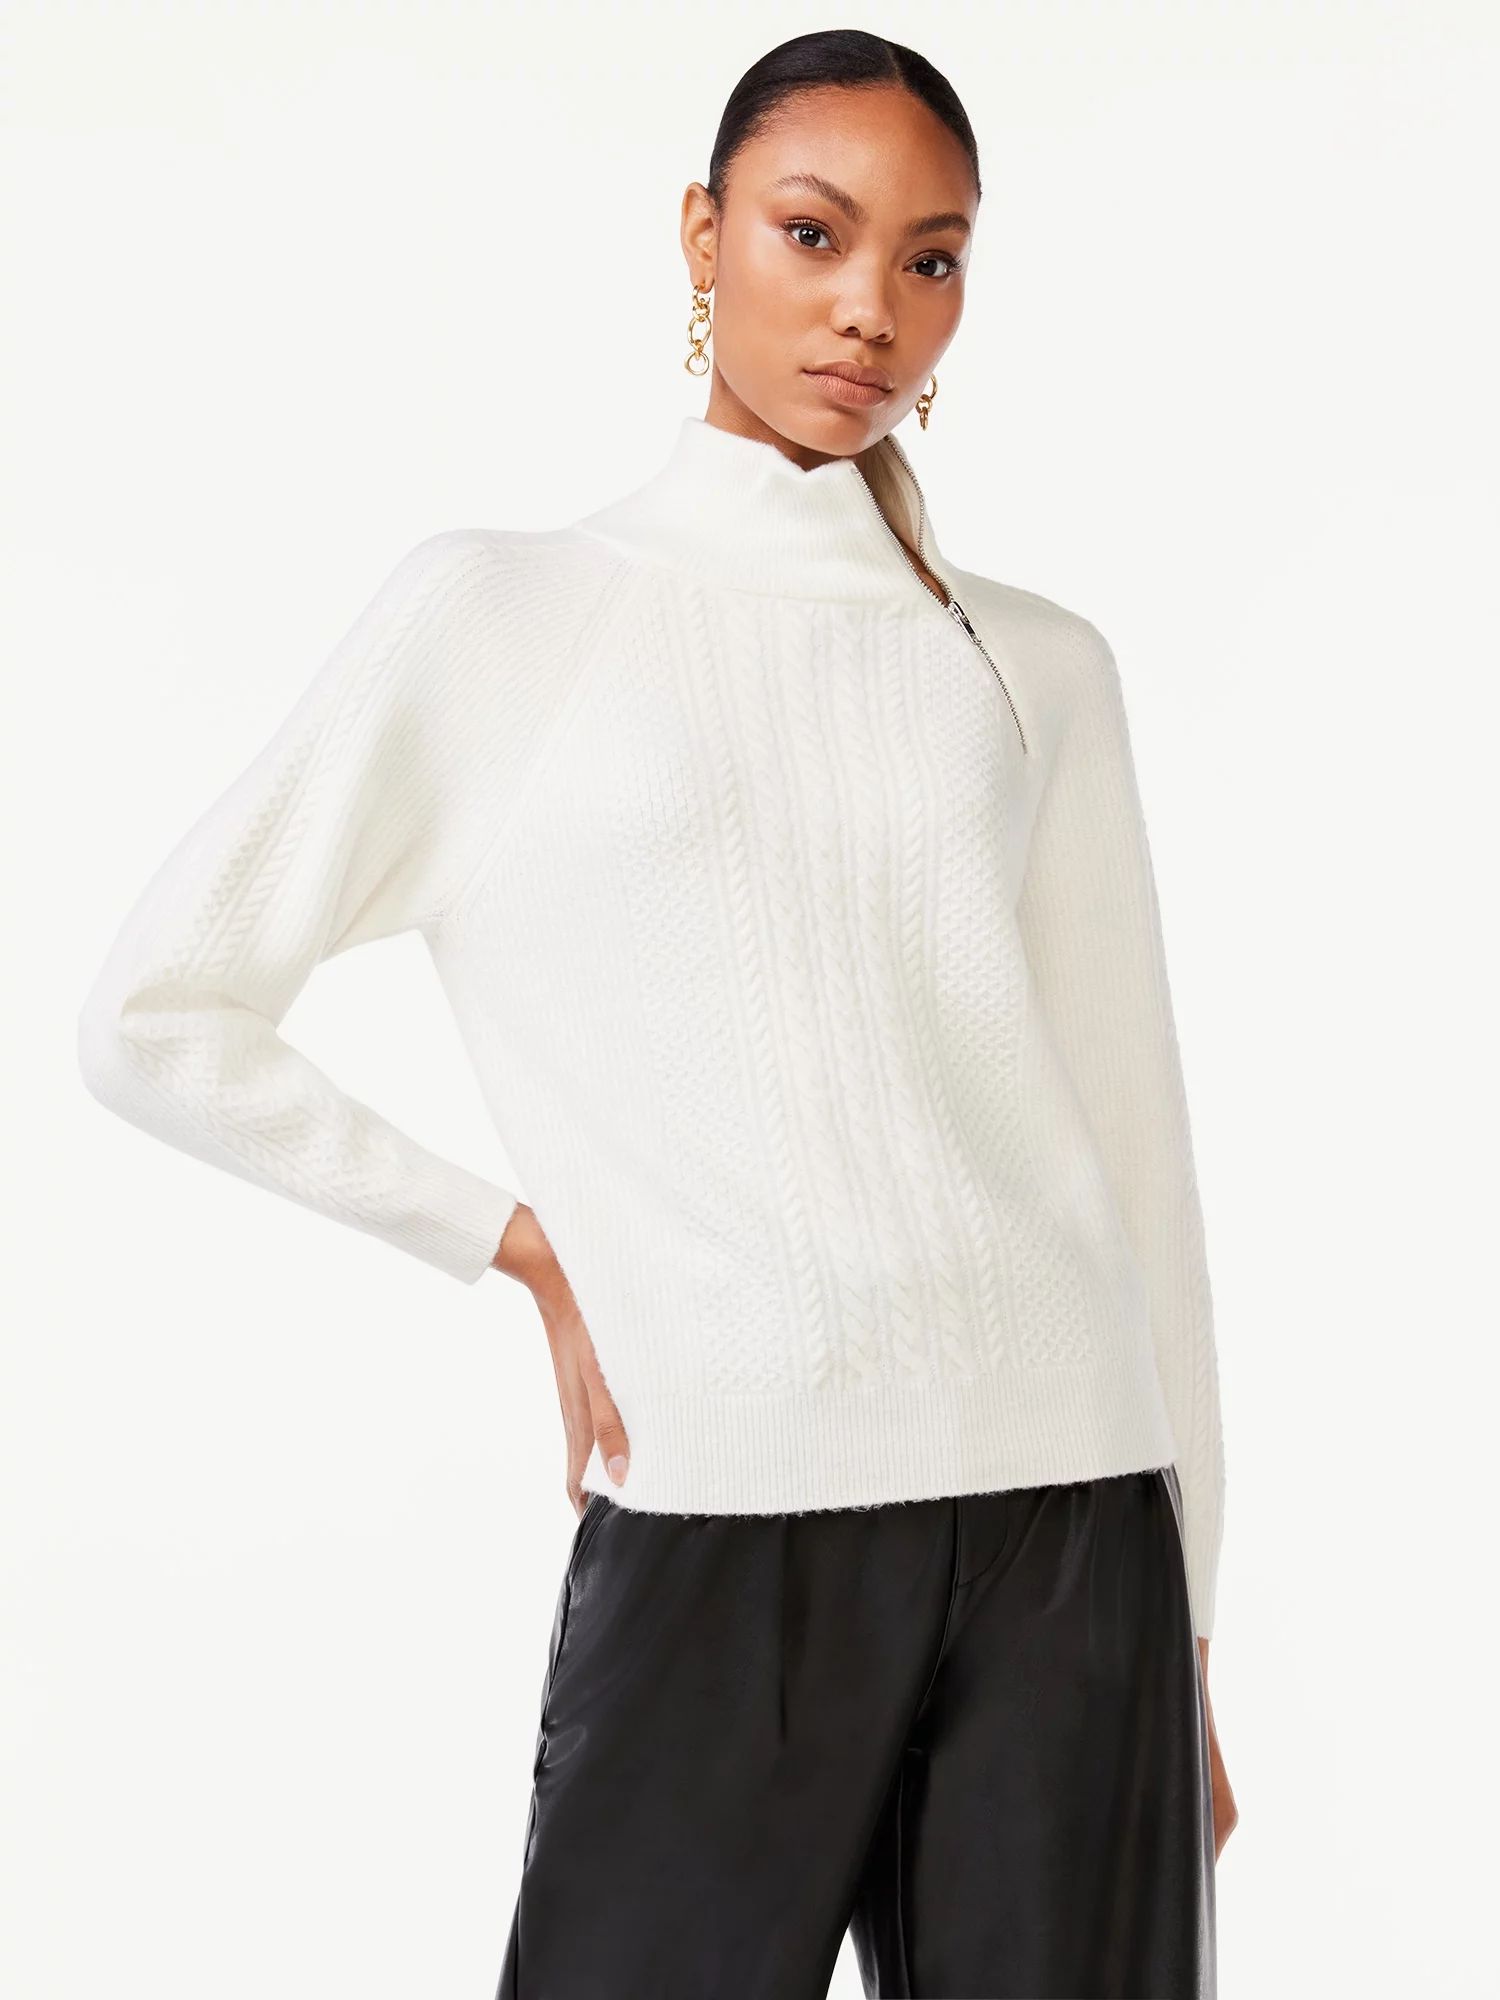 Scoop Women's Zip Neck Cable Sweater | Walmart (US)